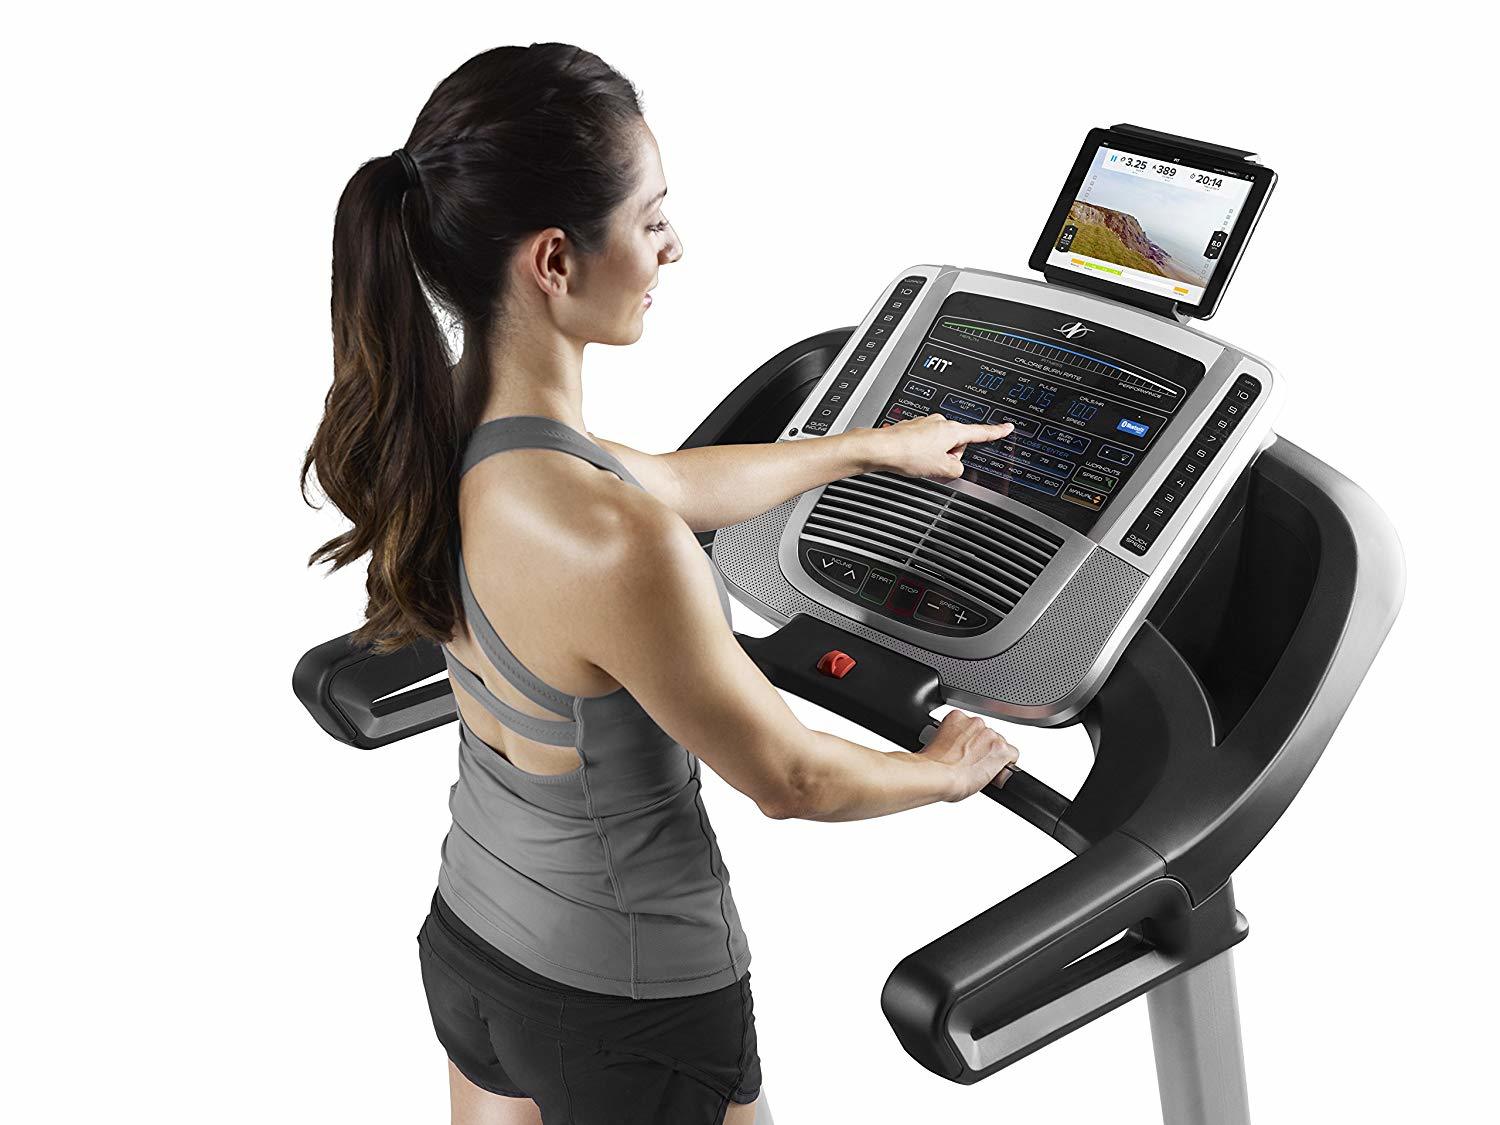 10 best treadmills under $500 & $1000 for home gym 20